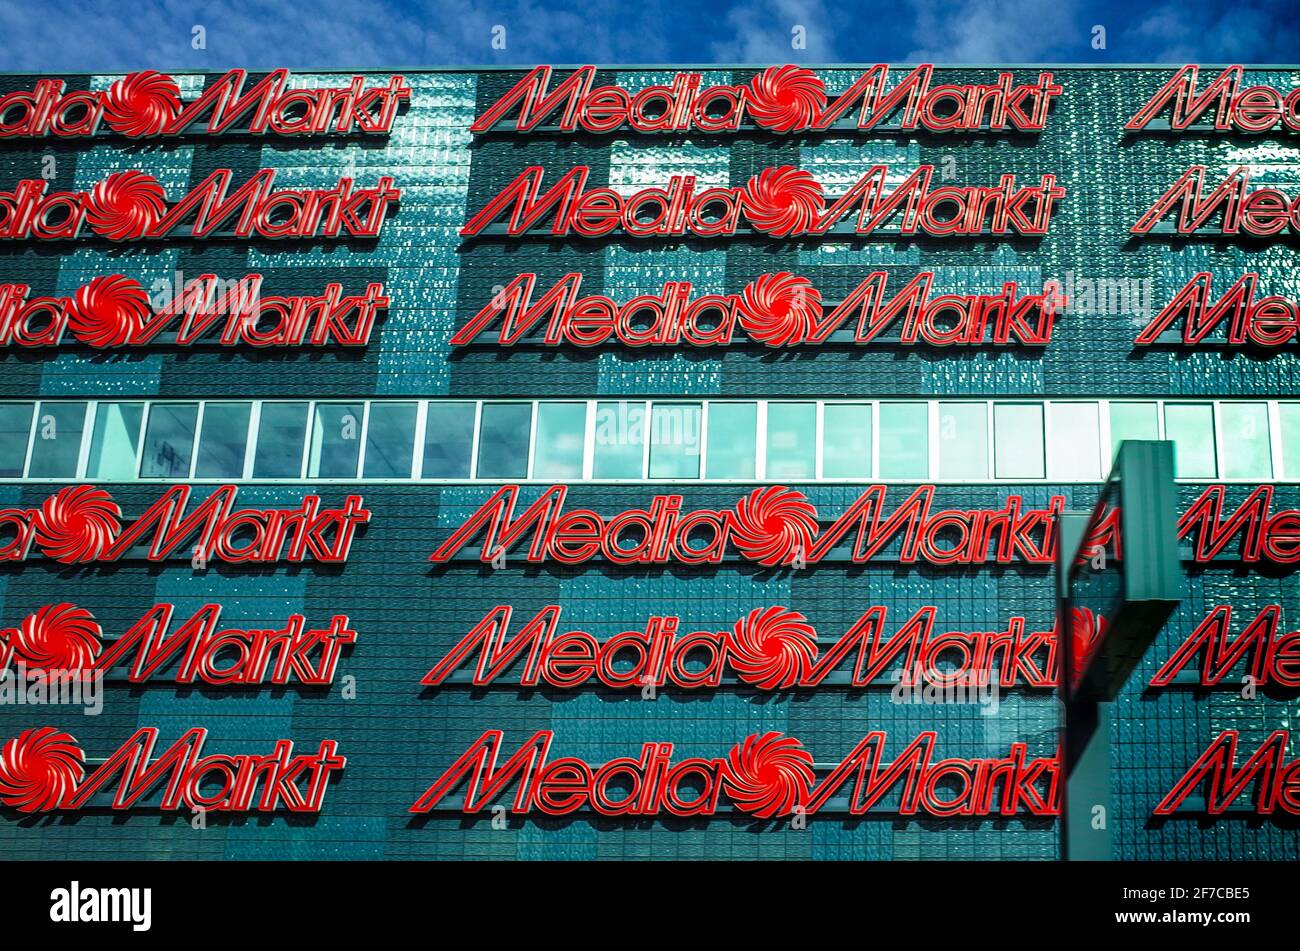 MediaMarkt - Media Markt StoreFront en Eindhoven NL - Media Markt es una cadena multinacional alemana de tiendas de electrónica de consumo con más de 1000 tiendas. Foto de stock